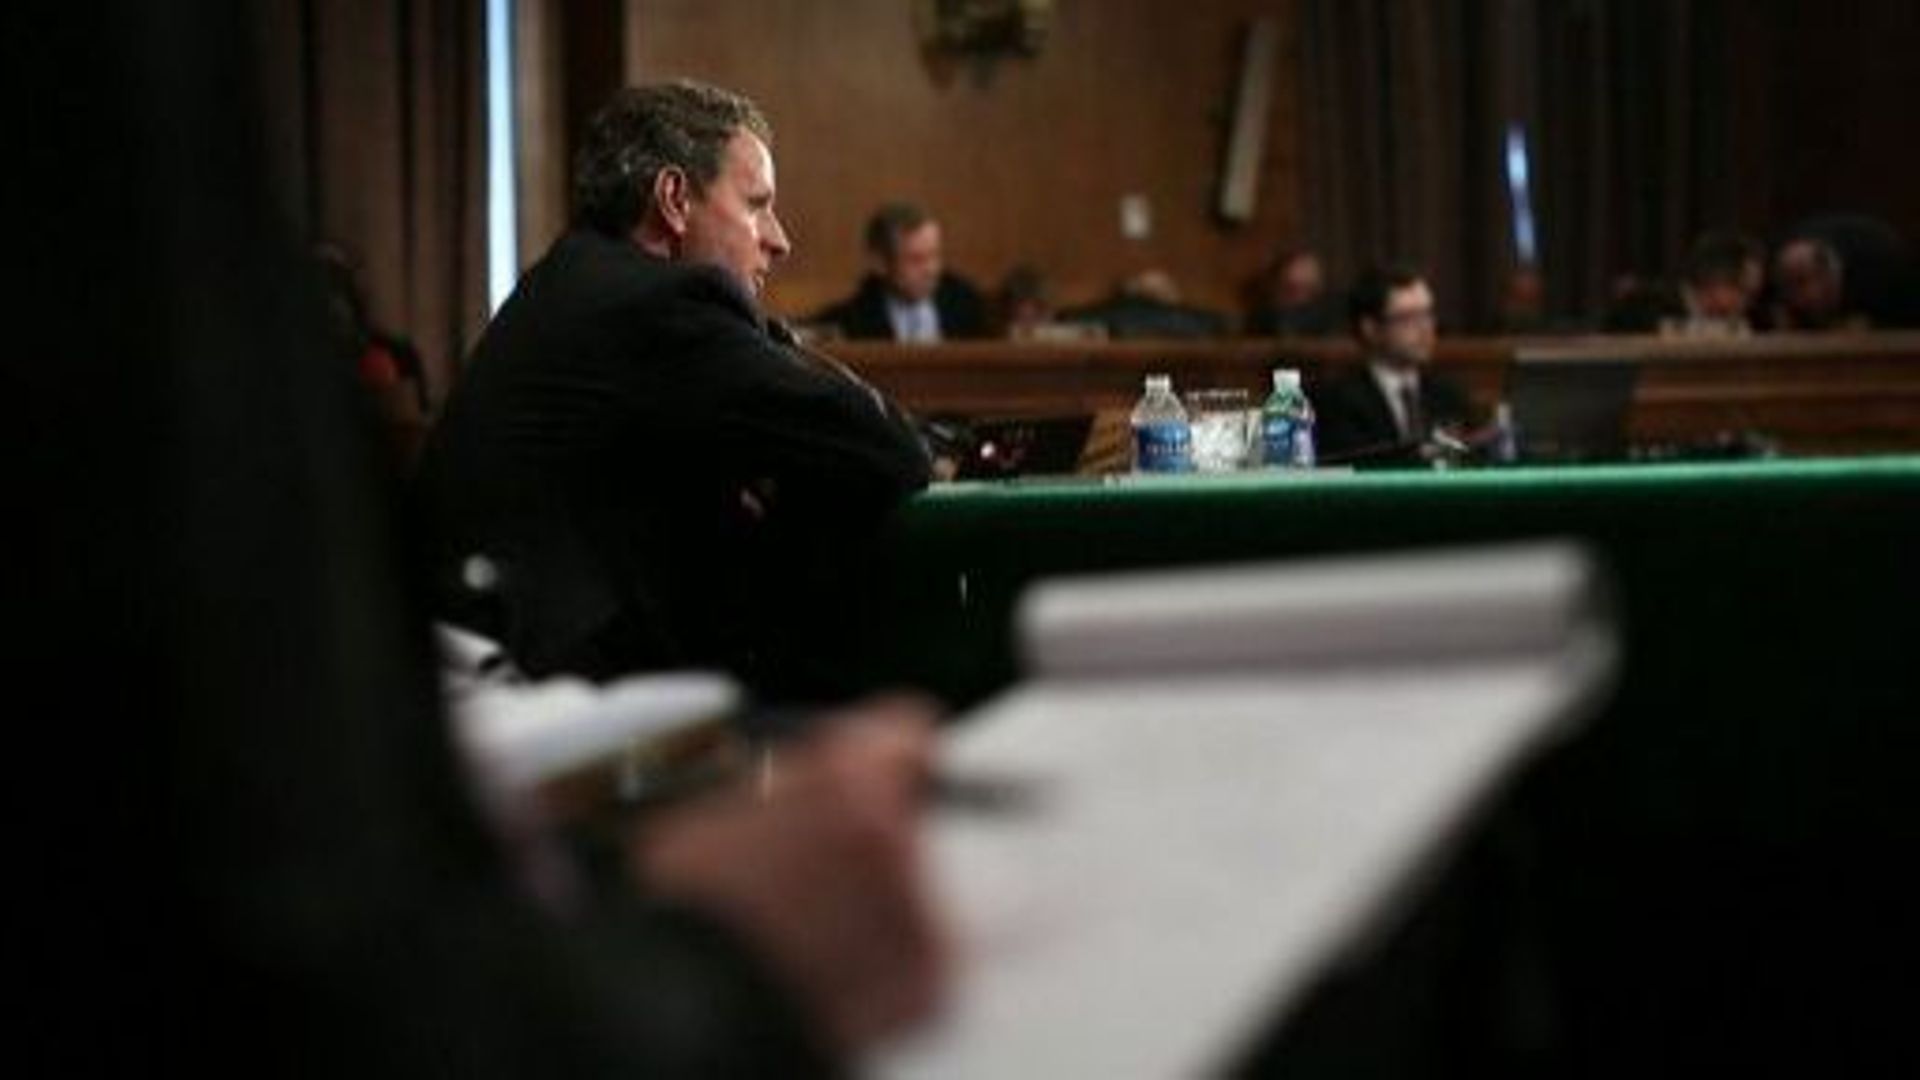 Le secrétaire du Trésor américain, Timothy Geithner, lors de son témoignage dans l'affaire du Libor, le 26 juillet 2012 à Washington